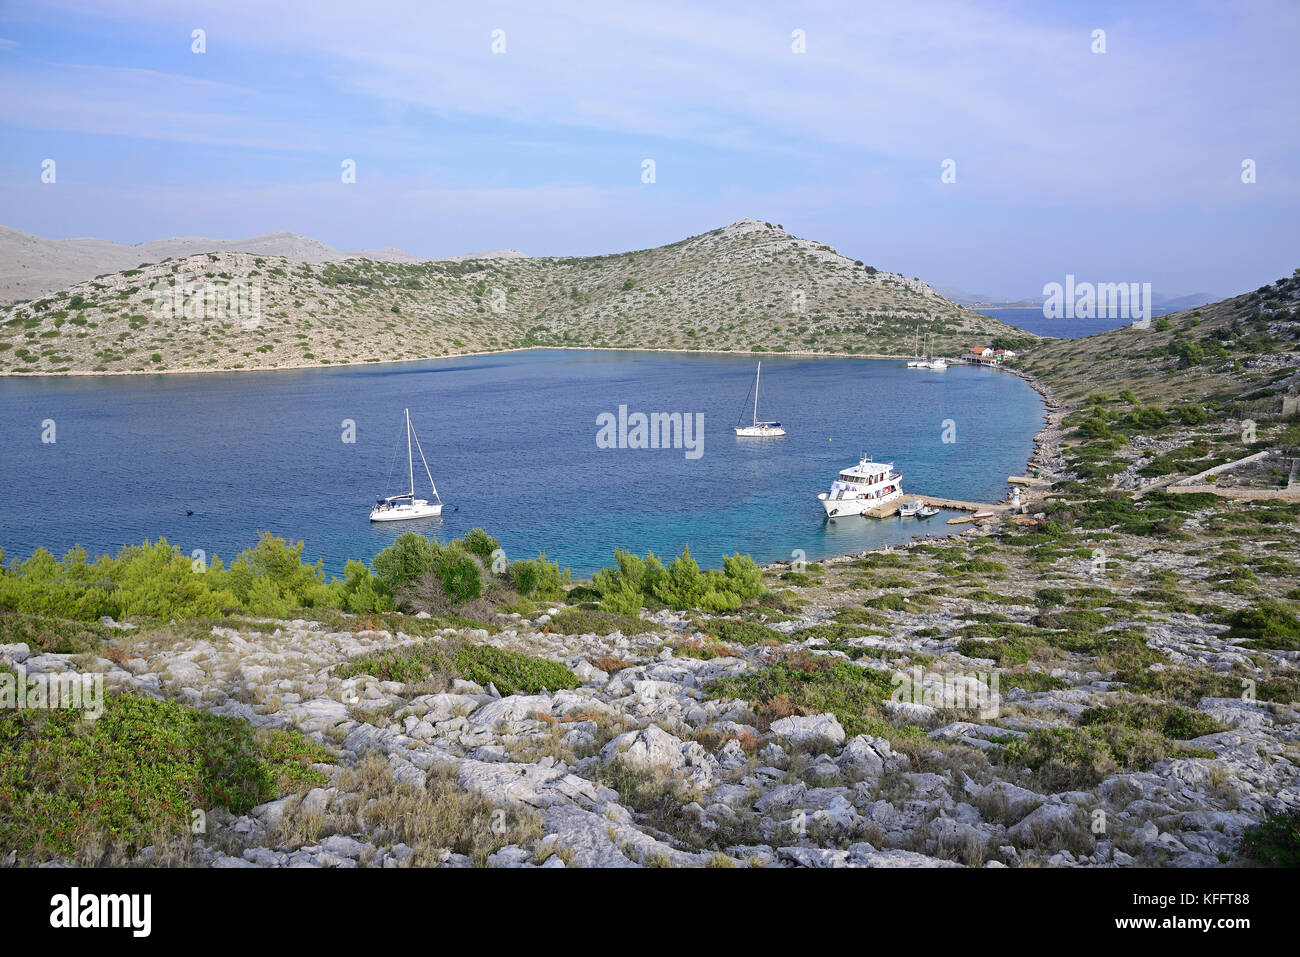 Porto naturale sull'isola disabitata lebrnaka,nationalpark isole di Kornati, mare adriatico, mare mediterraneo, DALMAZIA, CROAZIA Foto Stock